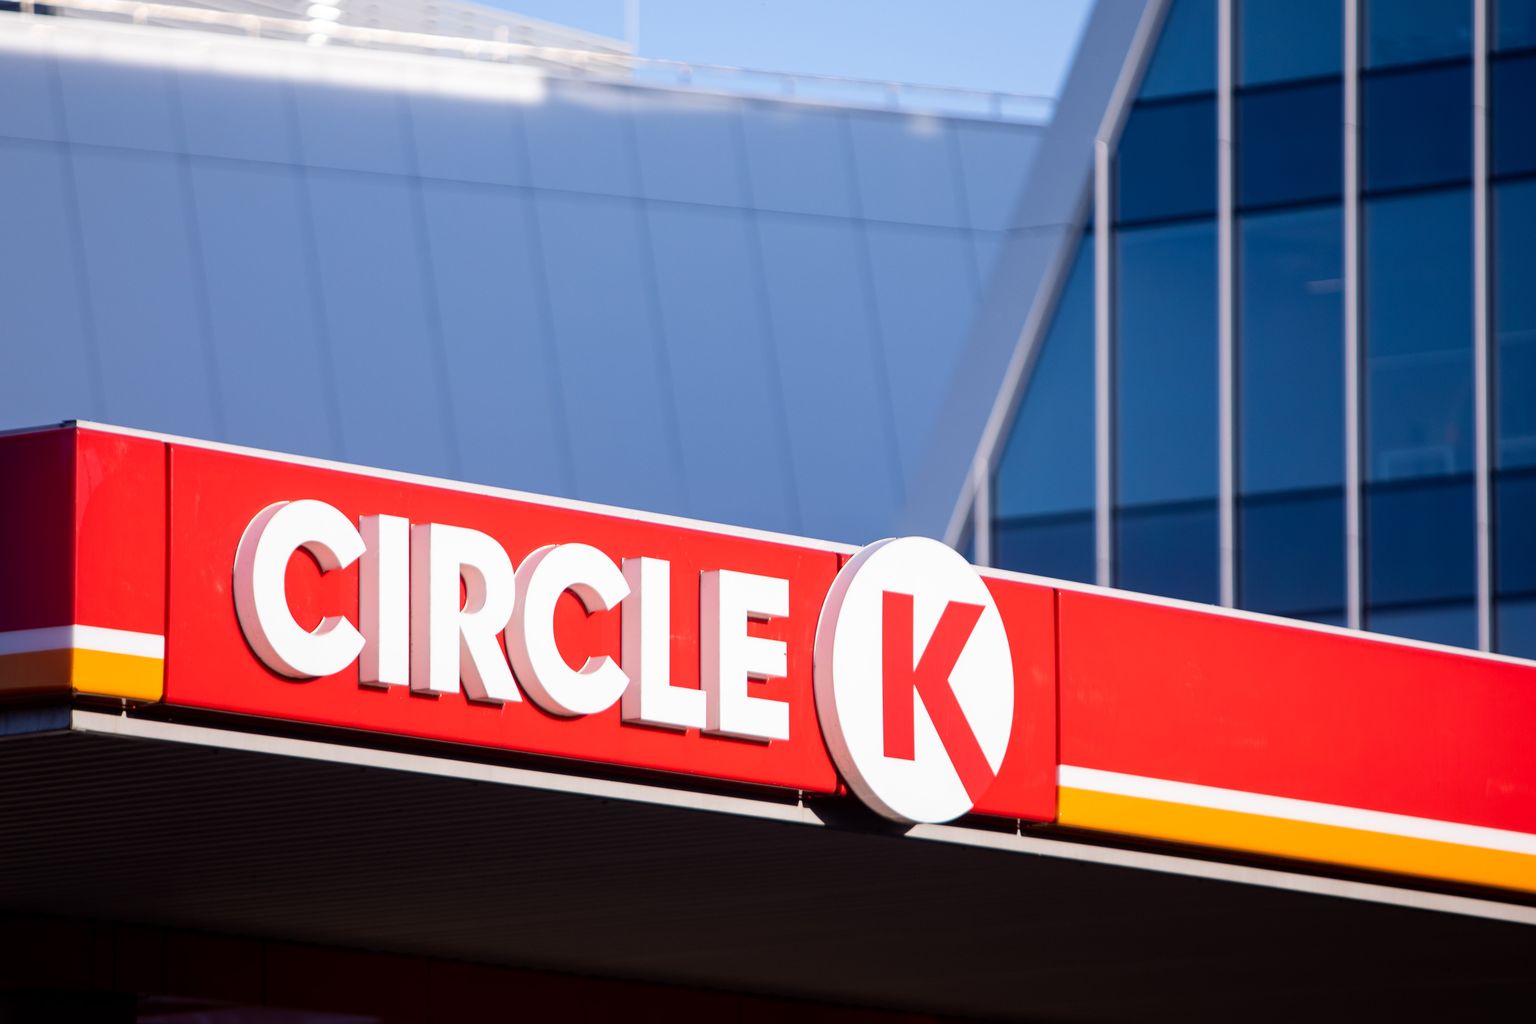 Circle K tankla.